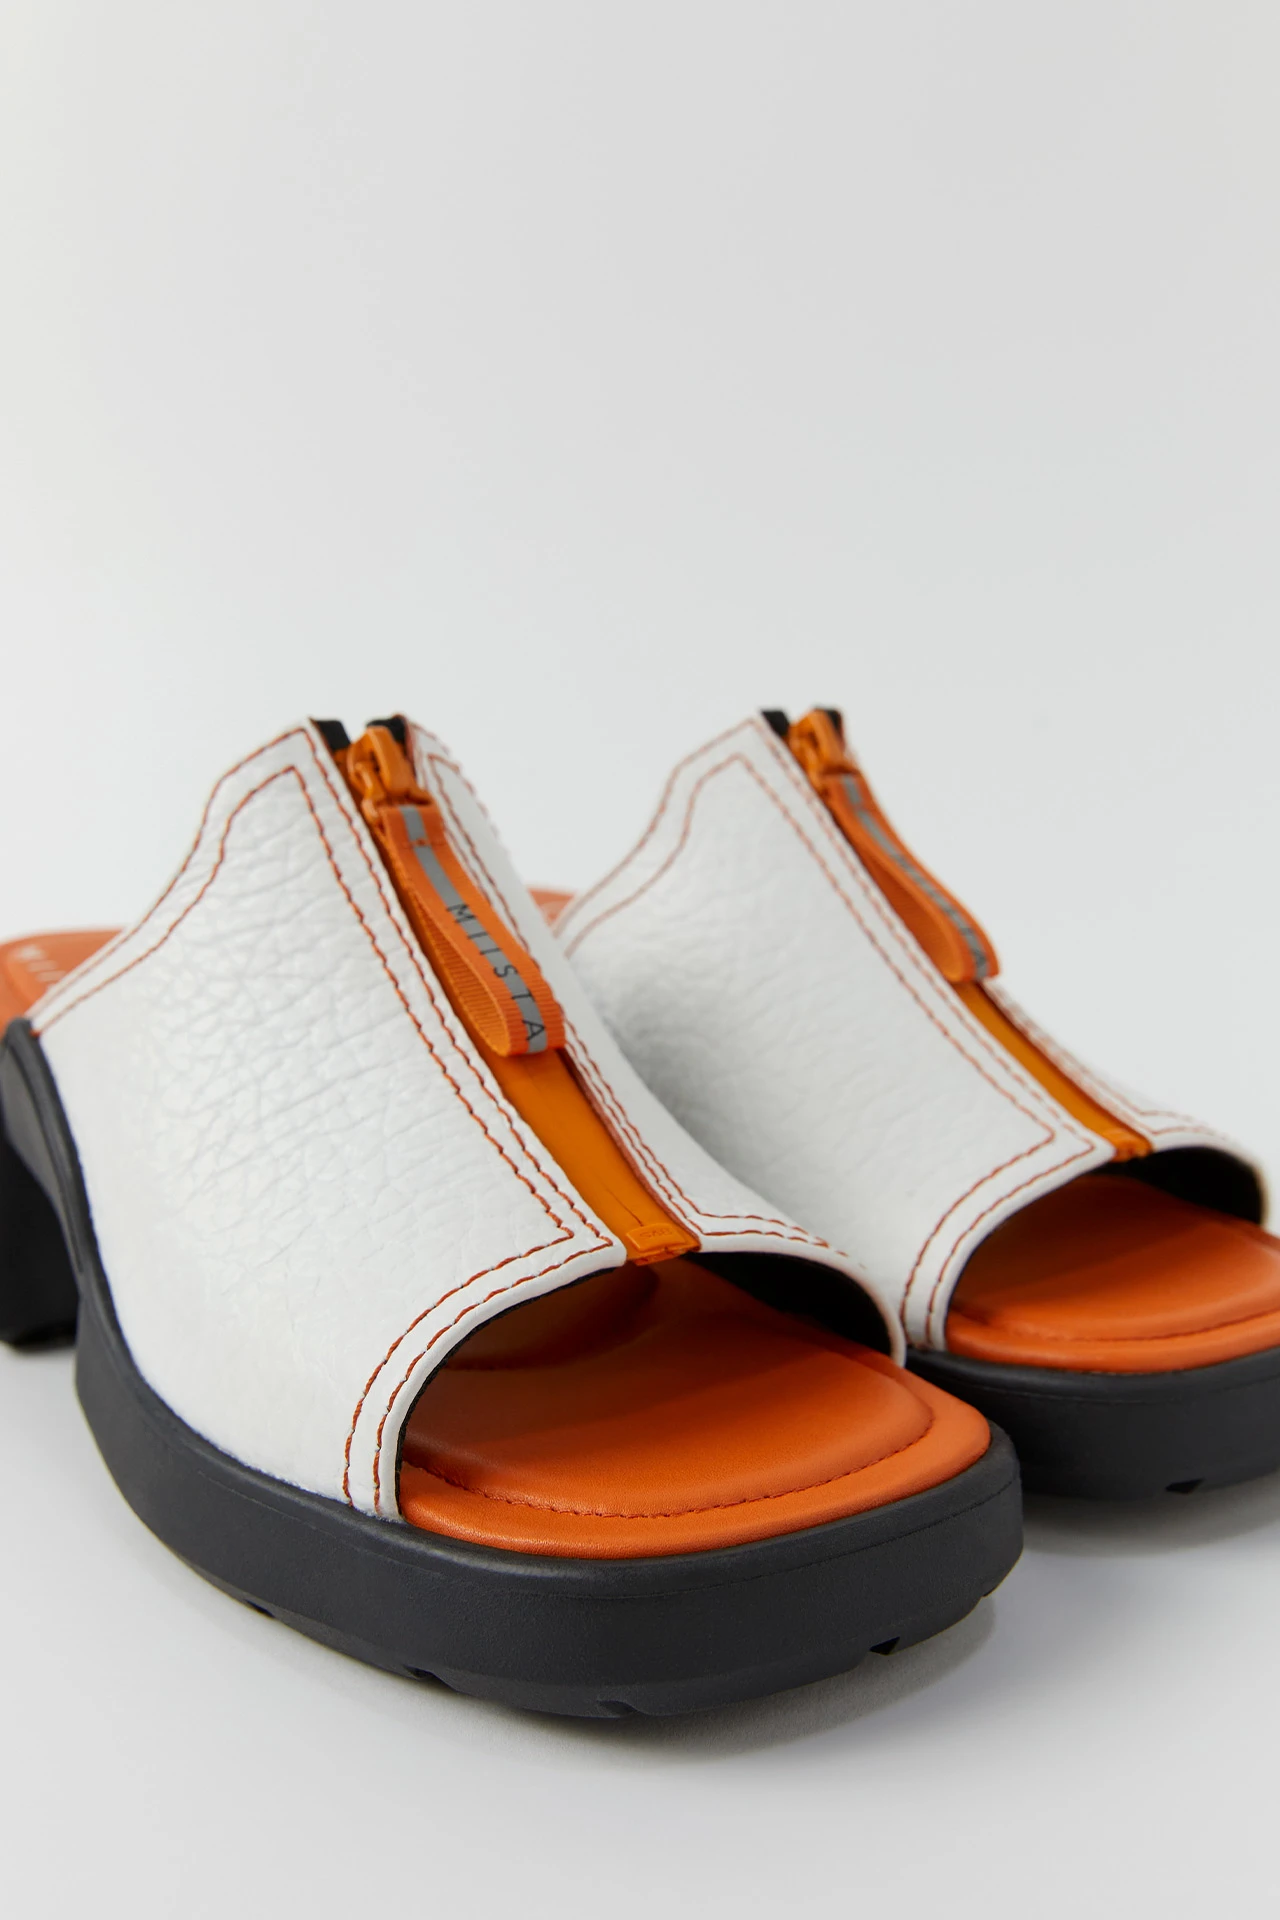 E8-bertie-white-sandals-02